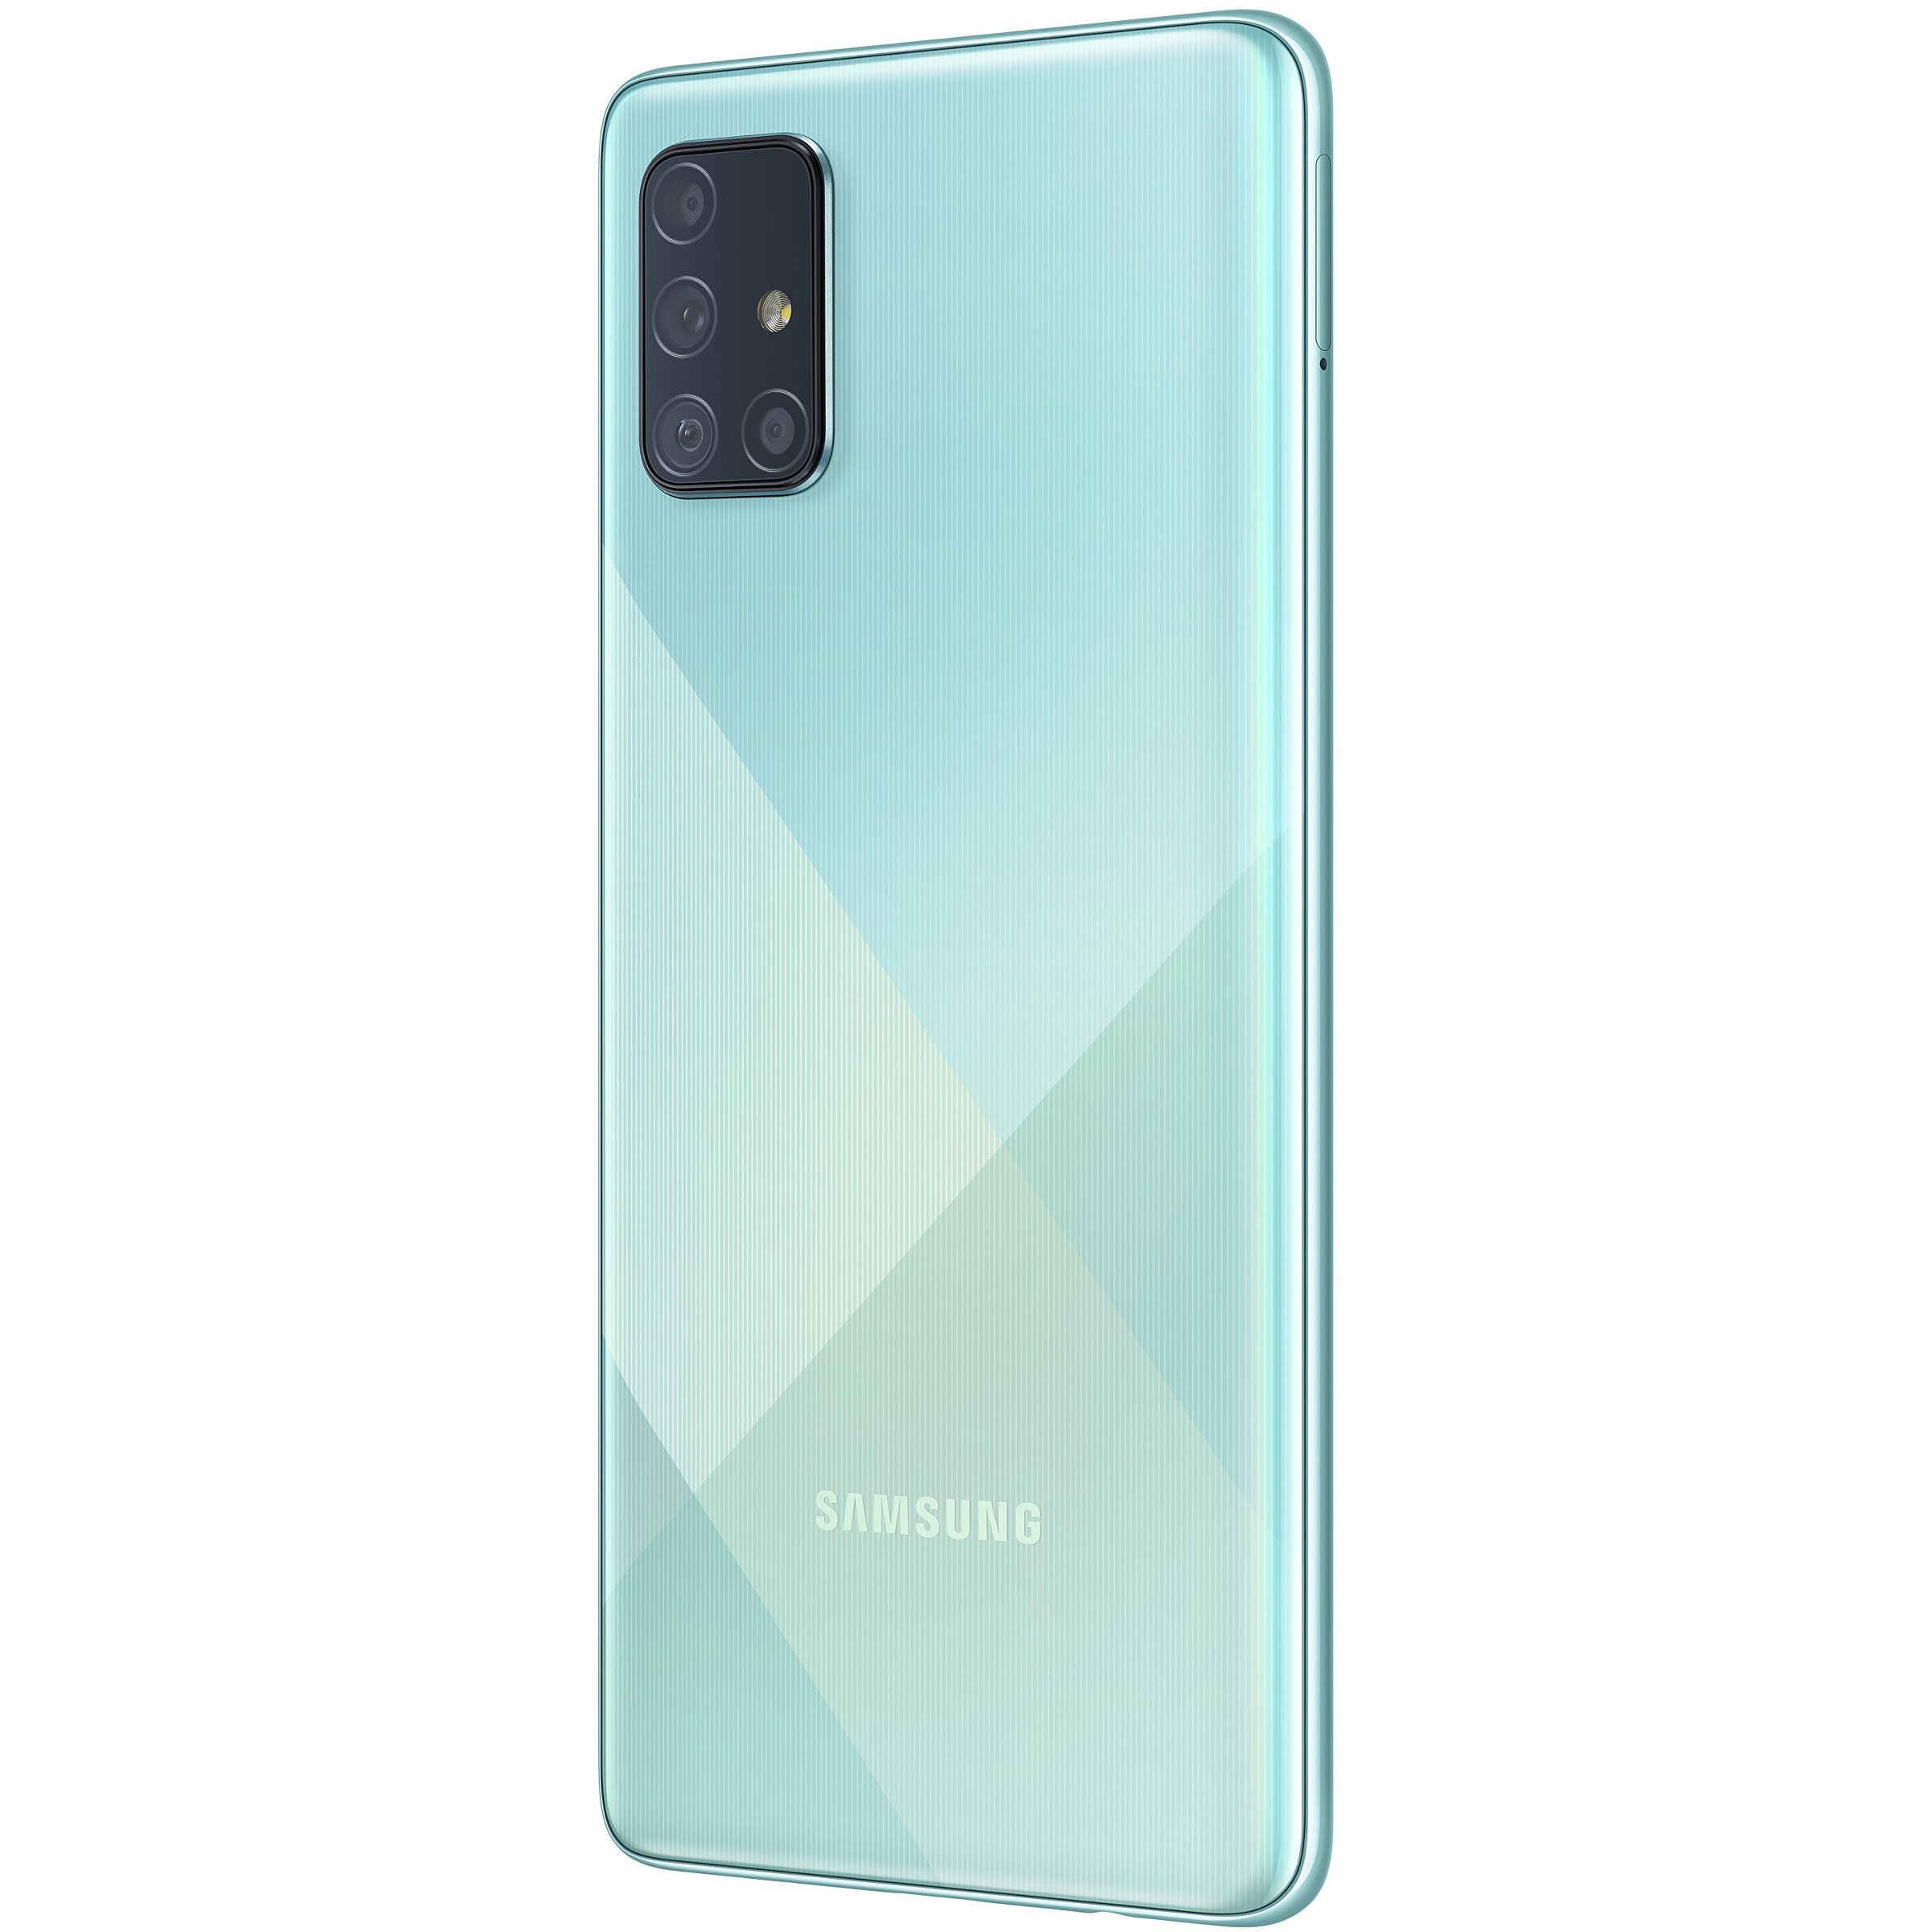 Samsung galaxy a71 128. Samsung Galaxy a51 128gb. Samsung Galaxy a71 6/128gb. Samsung Galaxy a51 64gb. Samsung a71 128gb.